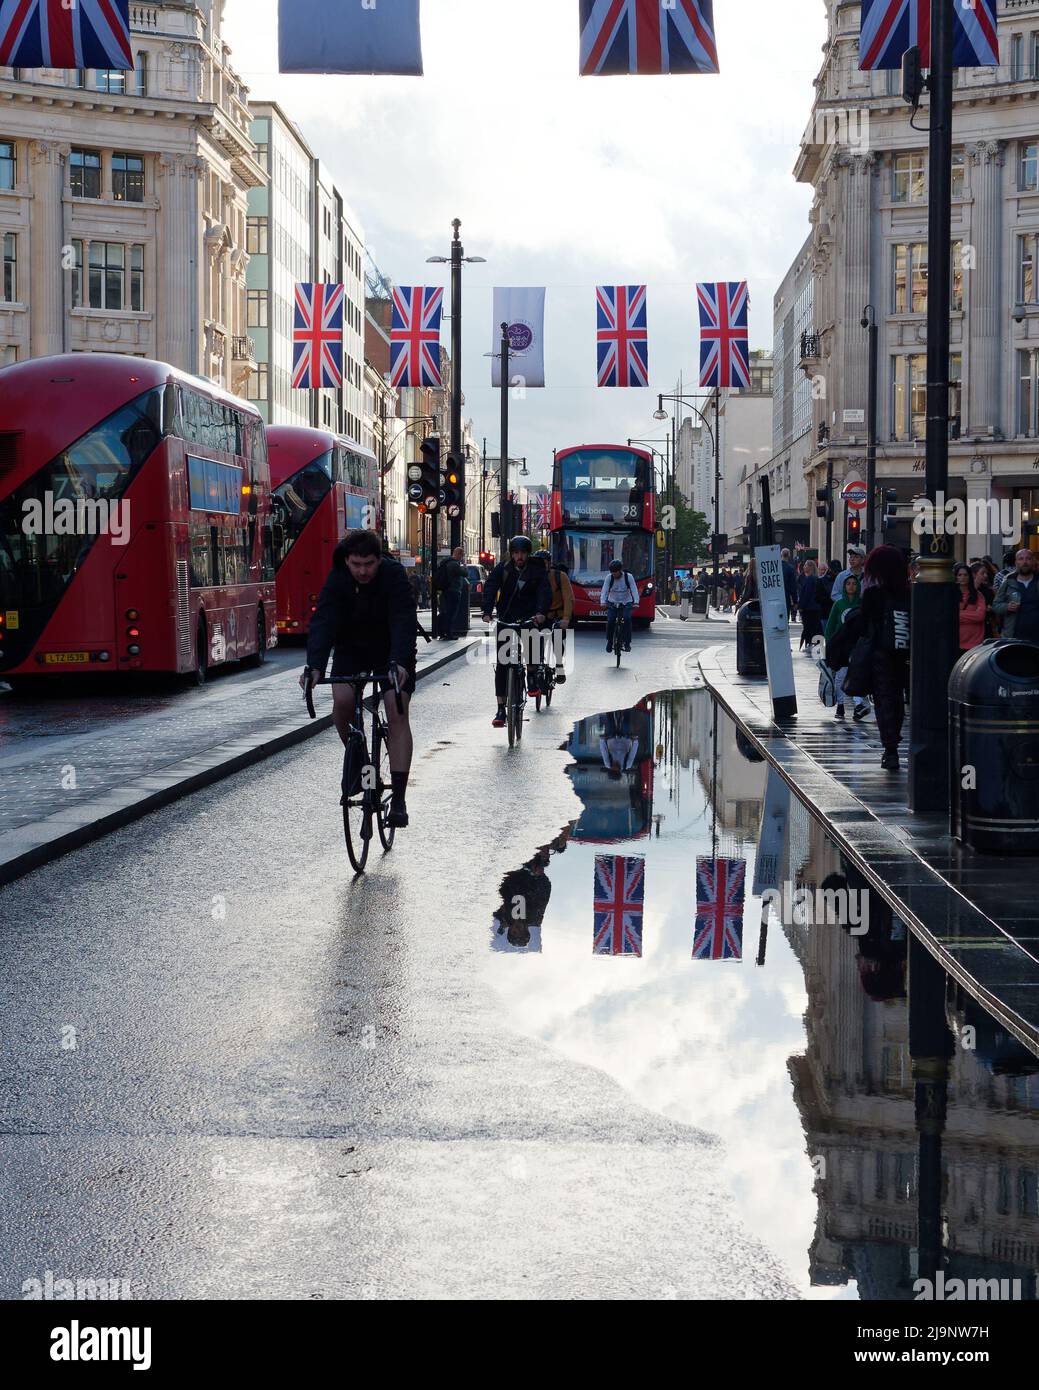 London, Greater London, England, Mai 11 2022: Radfahrer und Busse auf der Oxford Street am Oxford Circus nach starkem Regen haben Überschwemmungen auf der Straße. Stockfoto